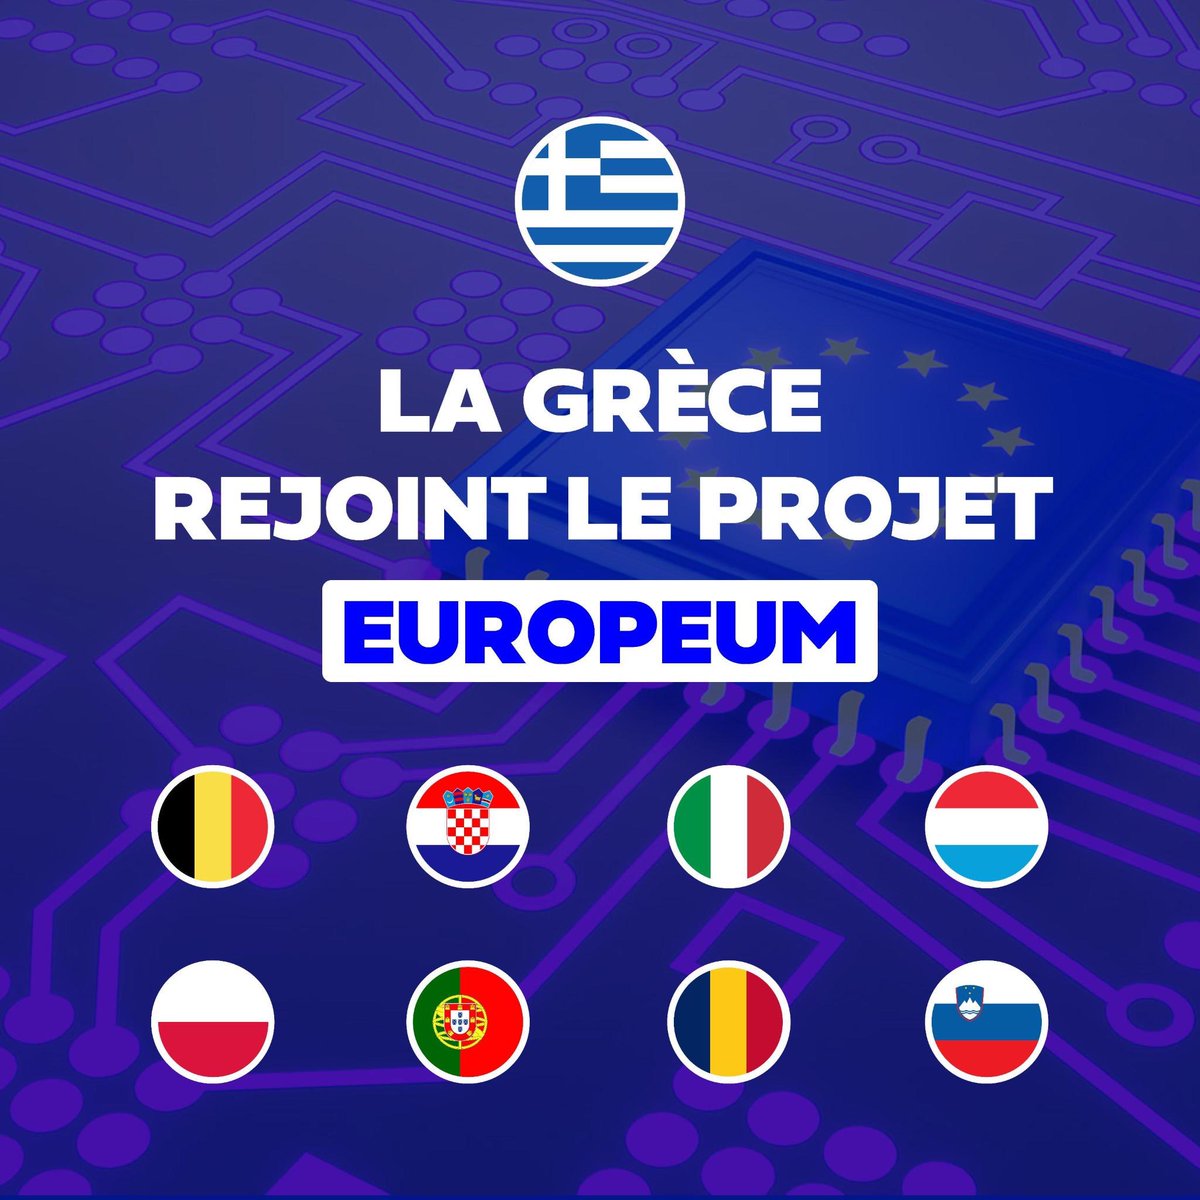 Europeum, le projet de blockchain européenne porté par la Belgique, s’agrandit avec l’arrivée de la Grèce dans le projet ! 9 pays en sont désormais déjà membres. 🇪🇺 🖥️ Europeum est une infrastructure technologique qui favorise la conclusion de contrats en ligne et permet